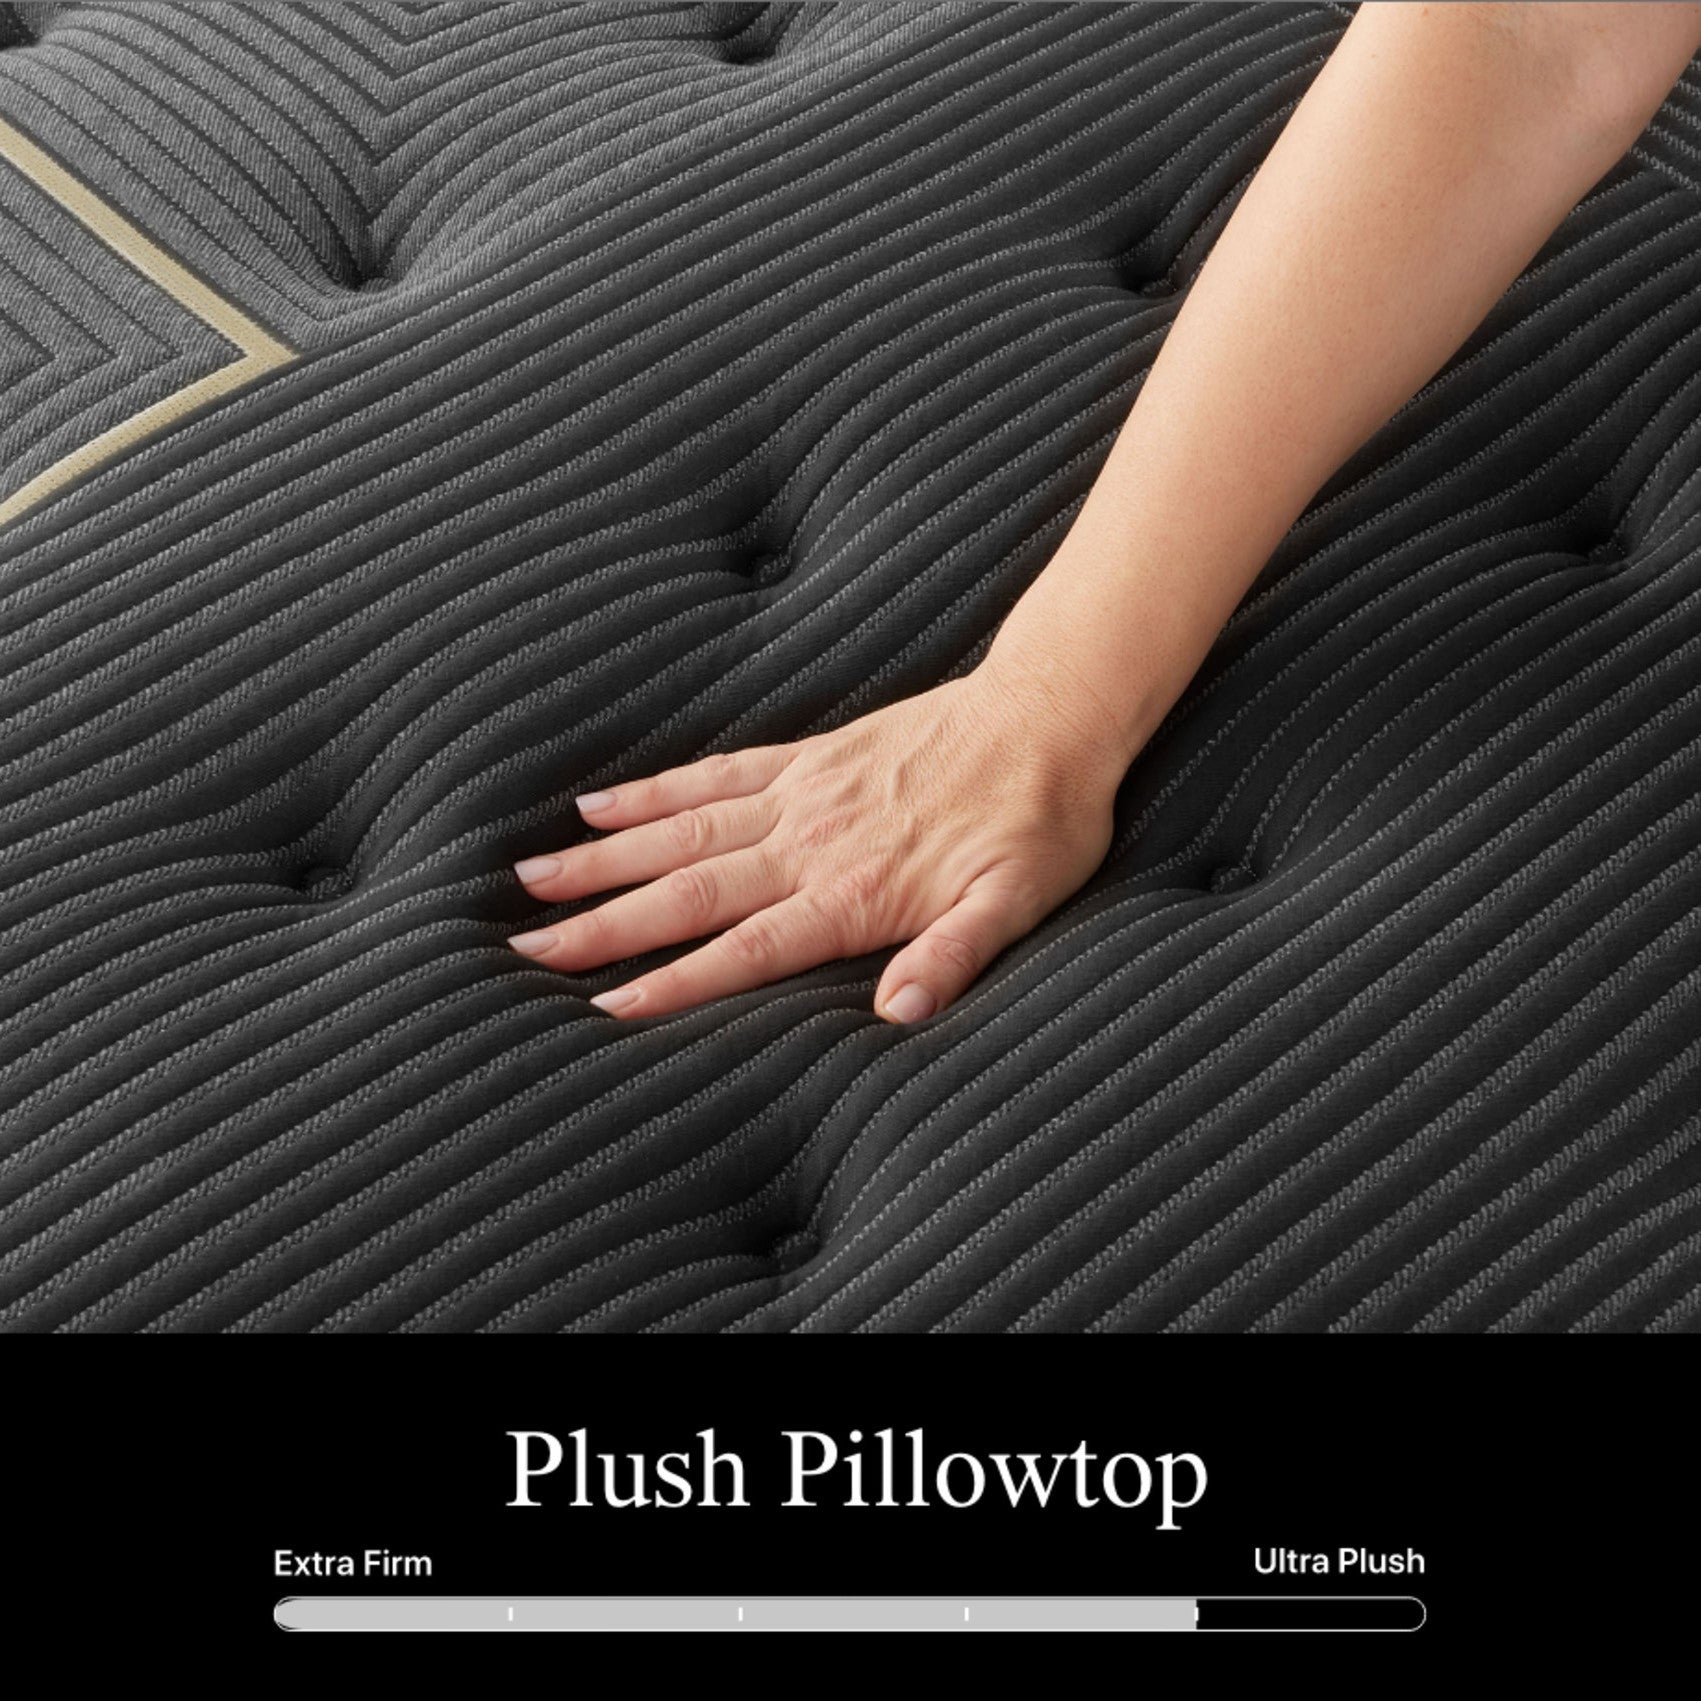 Beautyrest Black K-Class Plush Pillow Top Mattress